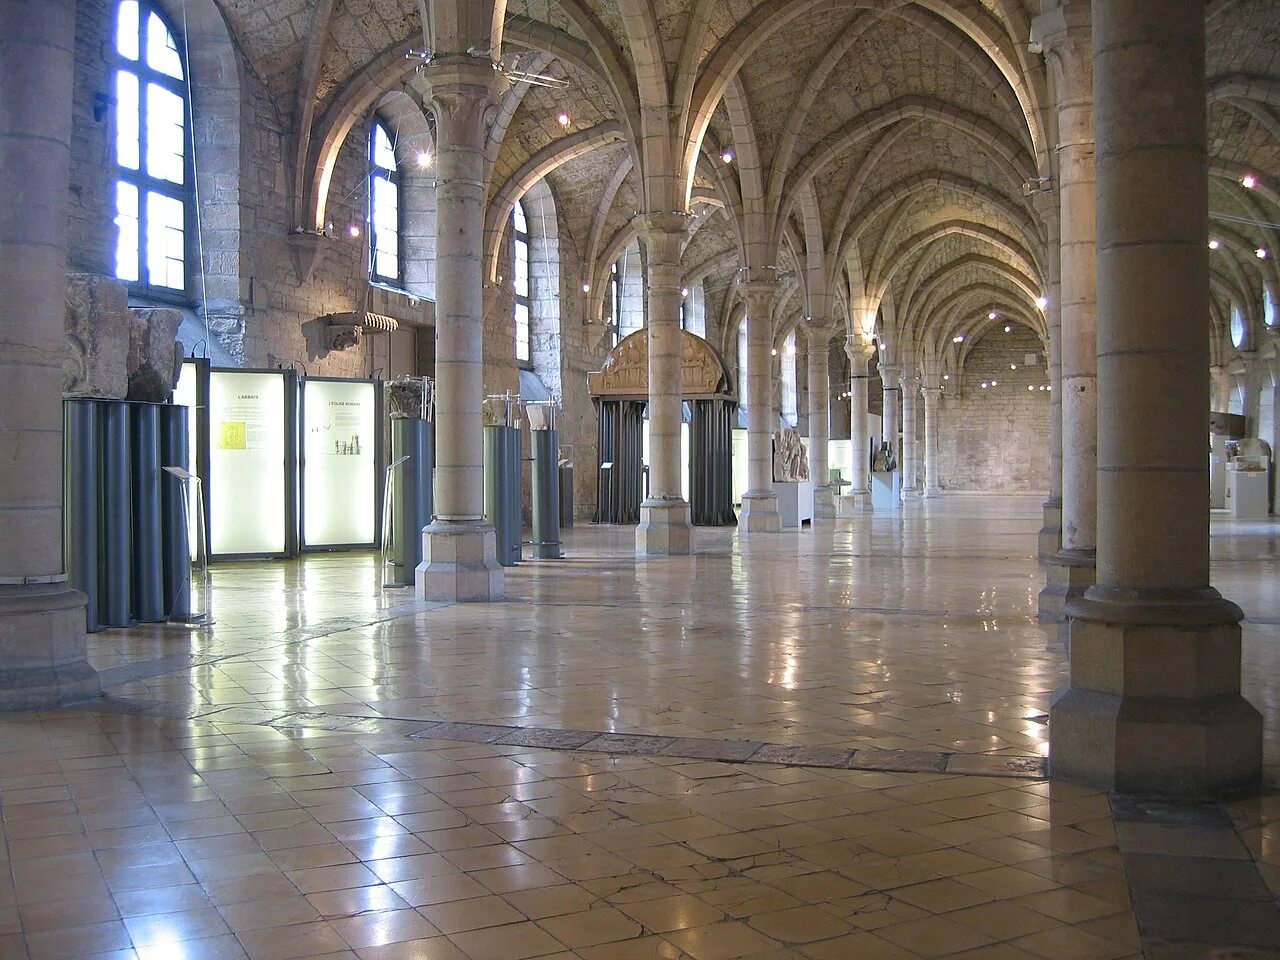 Археологический музей Дижона. Дортуар. Abbaye Bénédictine de Saint-Laurent аббатство в Льеже, Бельгия.